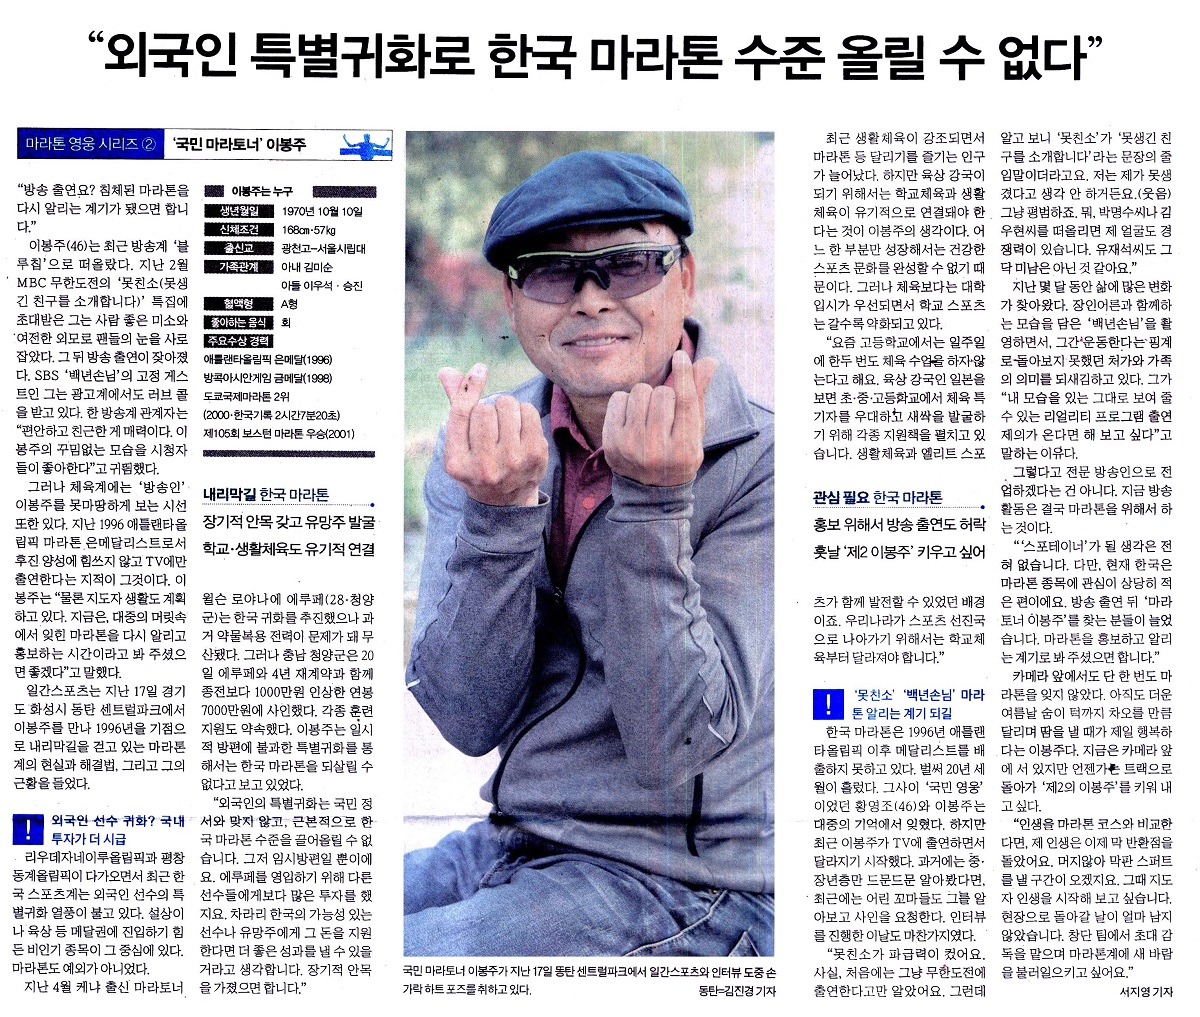 “외국인 특별귀화로 한국 마라톤 수준 올릴 수 없다”